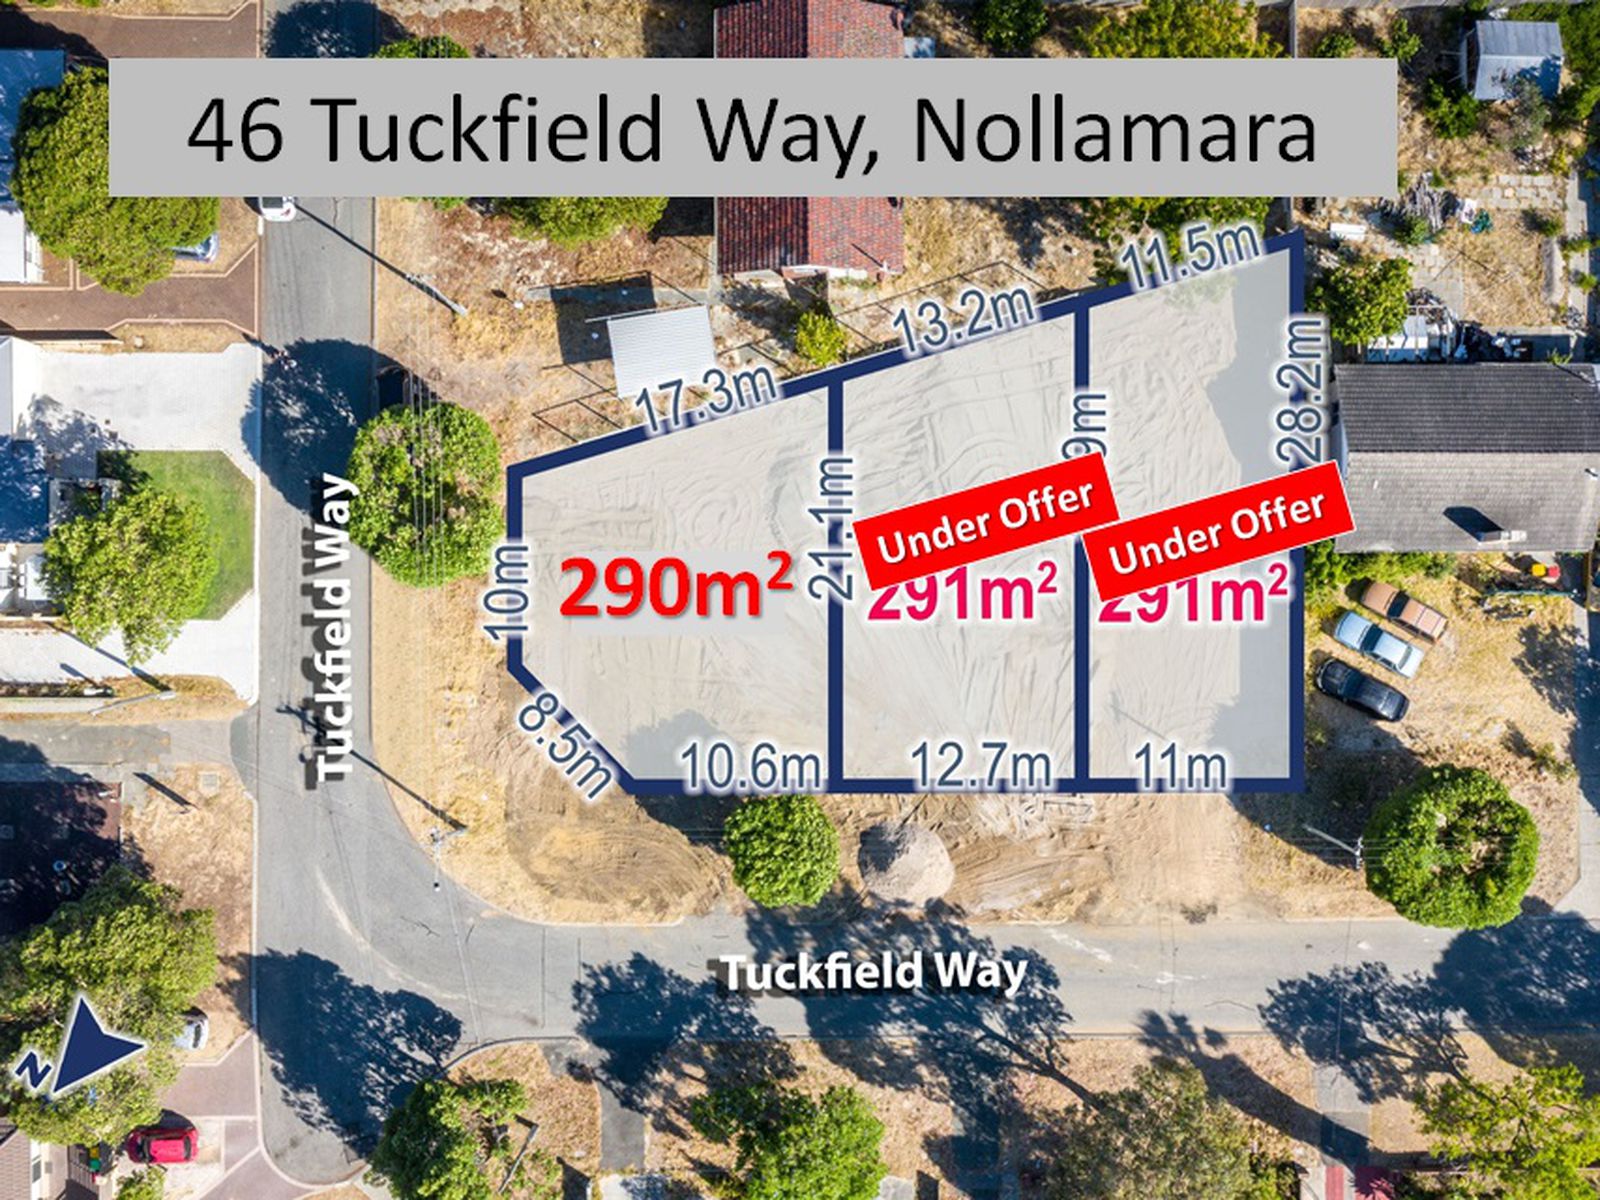 46 Tuckfield Way, Nollamara